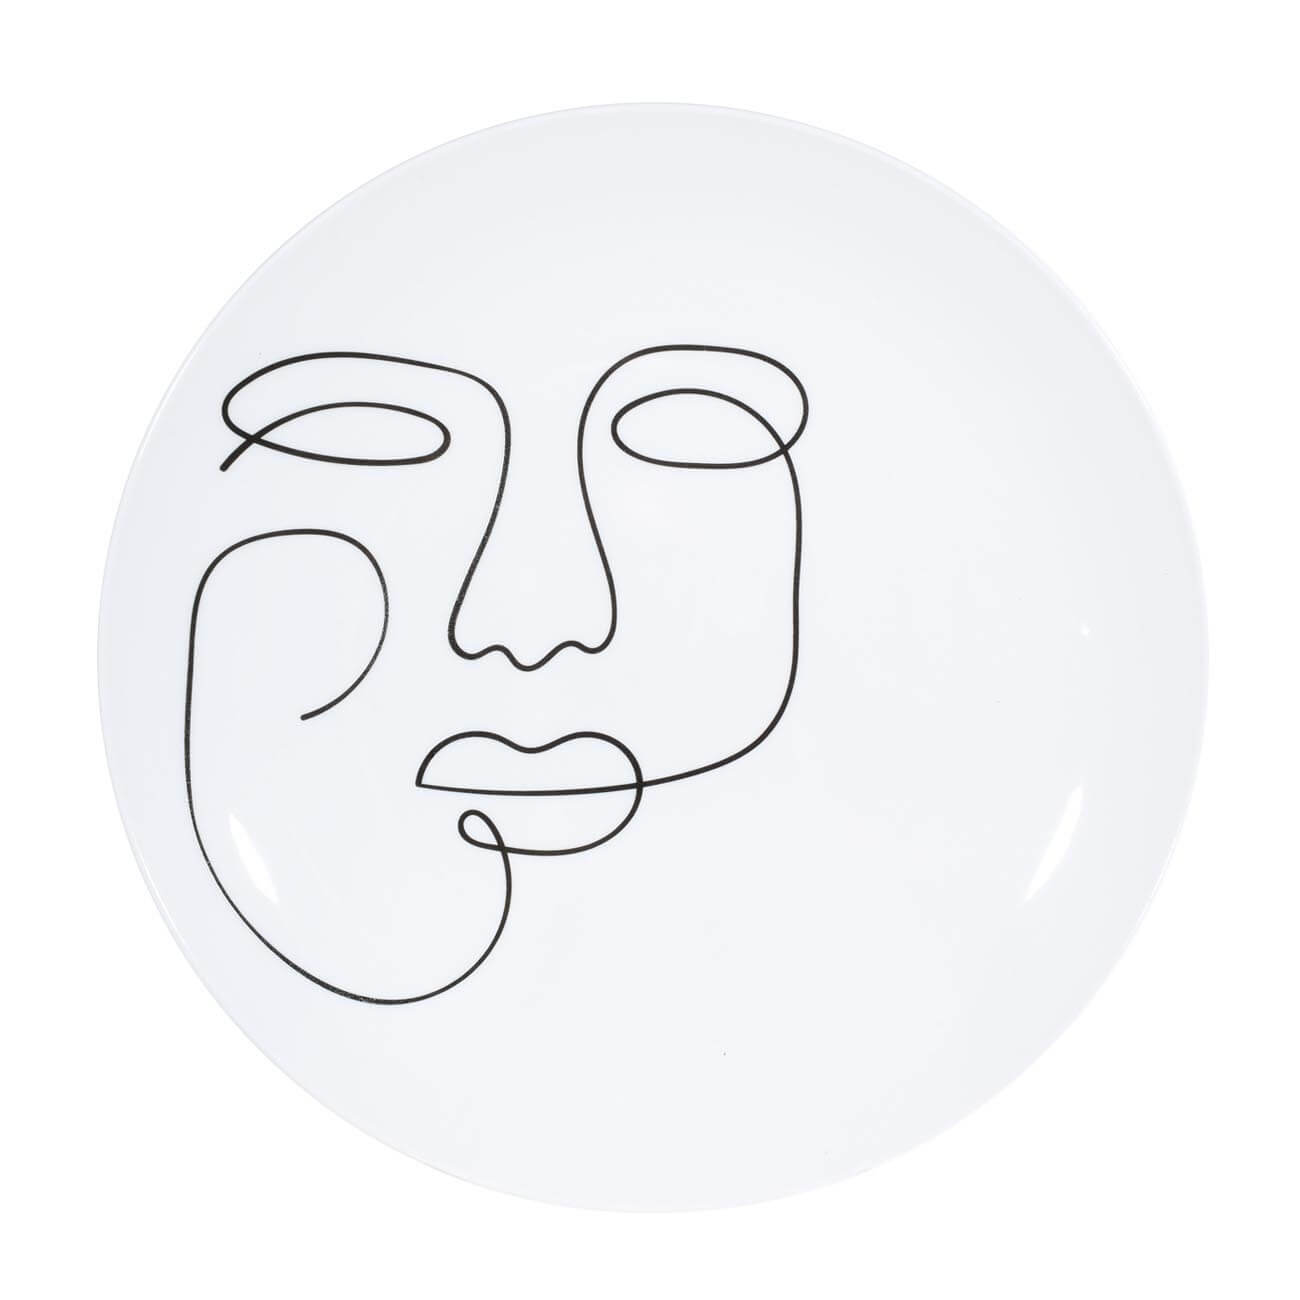 Тарелка обеденная, 27 см, 2 шт, фарфор N, белая, Контурное лицо, Face изображение № 1